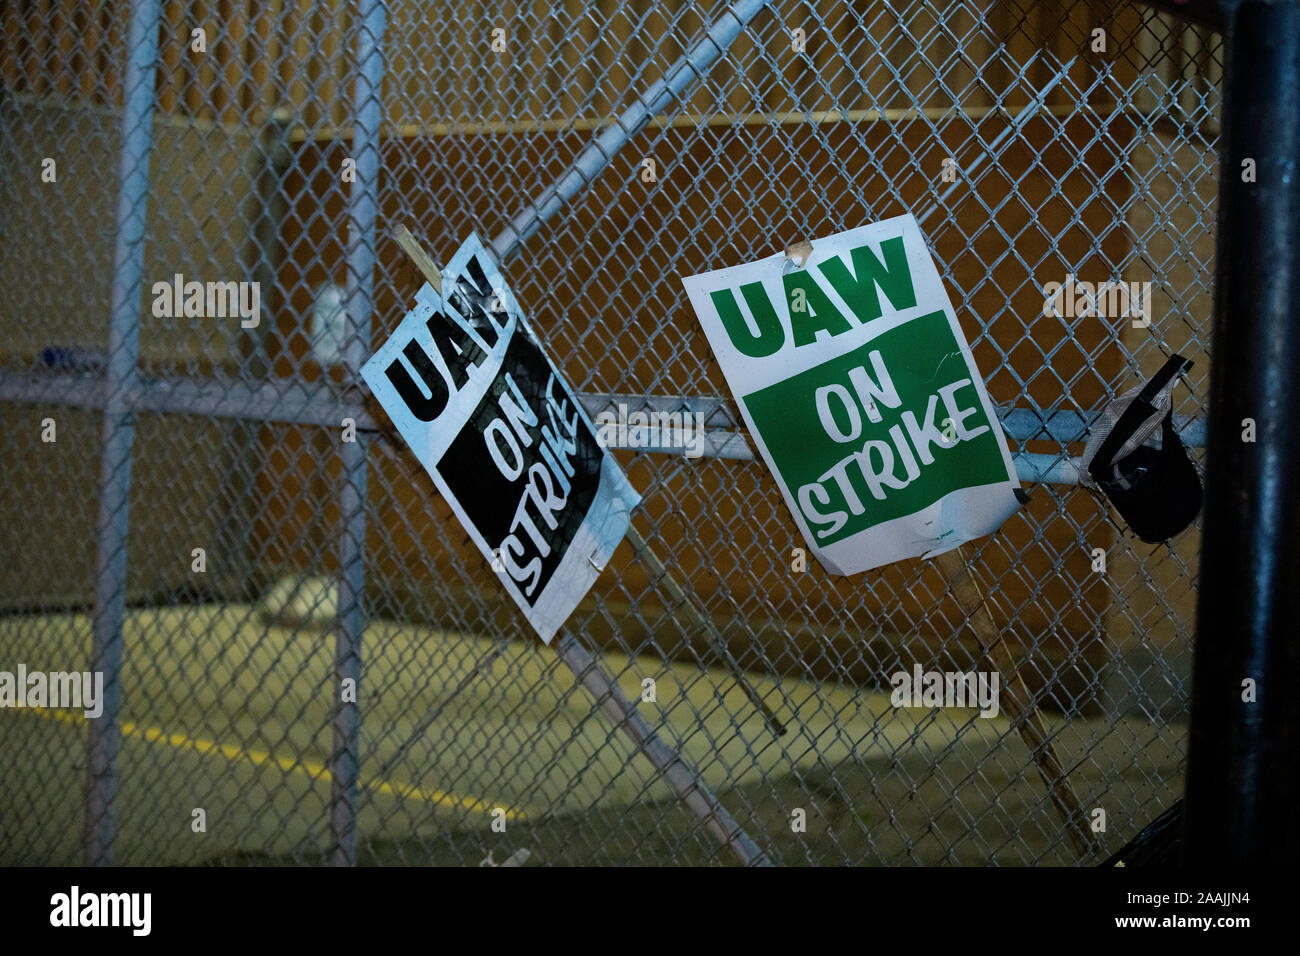 United Auto Workers (UAW) les membres de l'union sur la ligne de piquetage contre General Motors (GM) à l'usine de montage de Flint, Flint, Michigan. Octobre, 2019 Banque D'Images